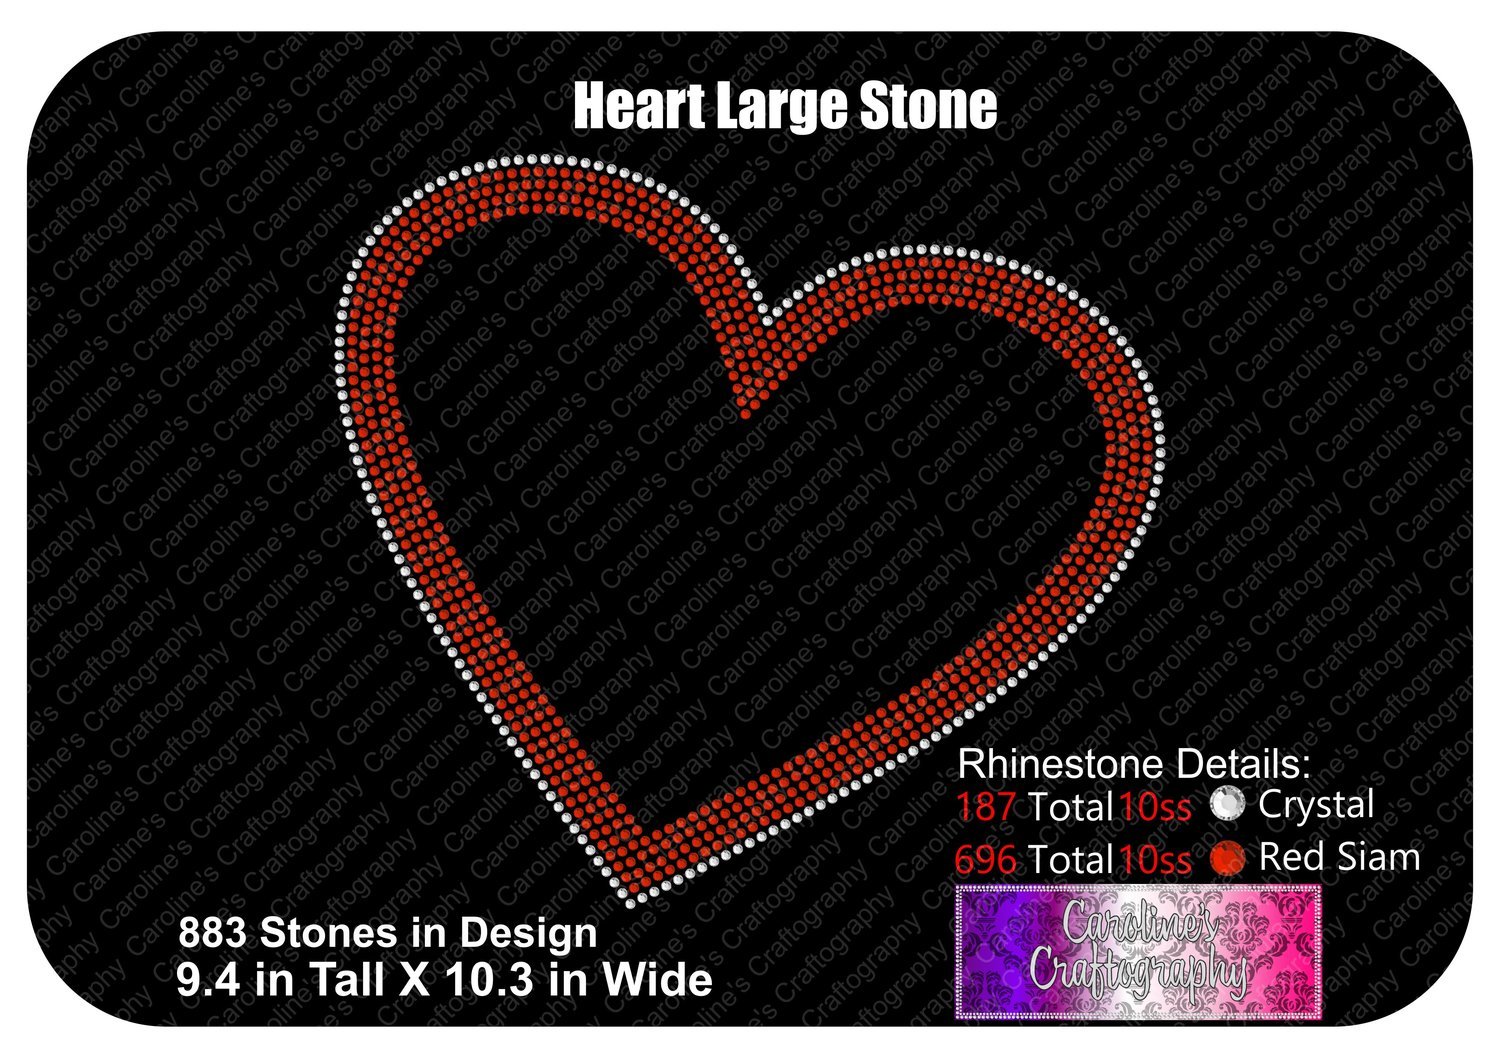 Heart Large Stone